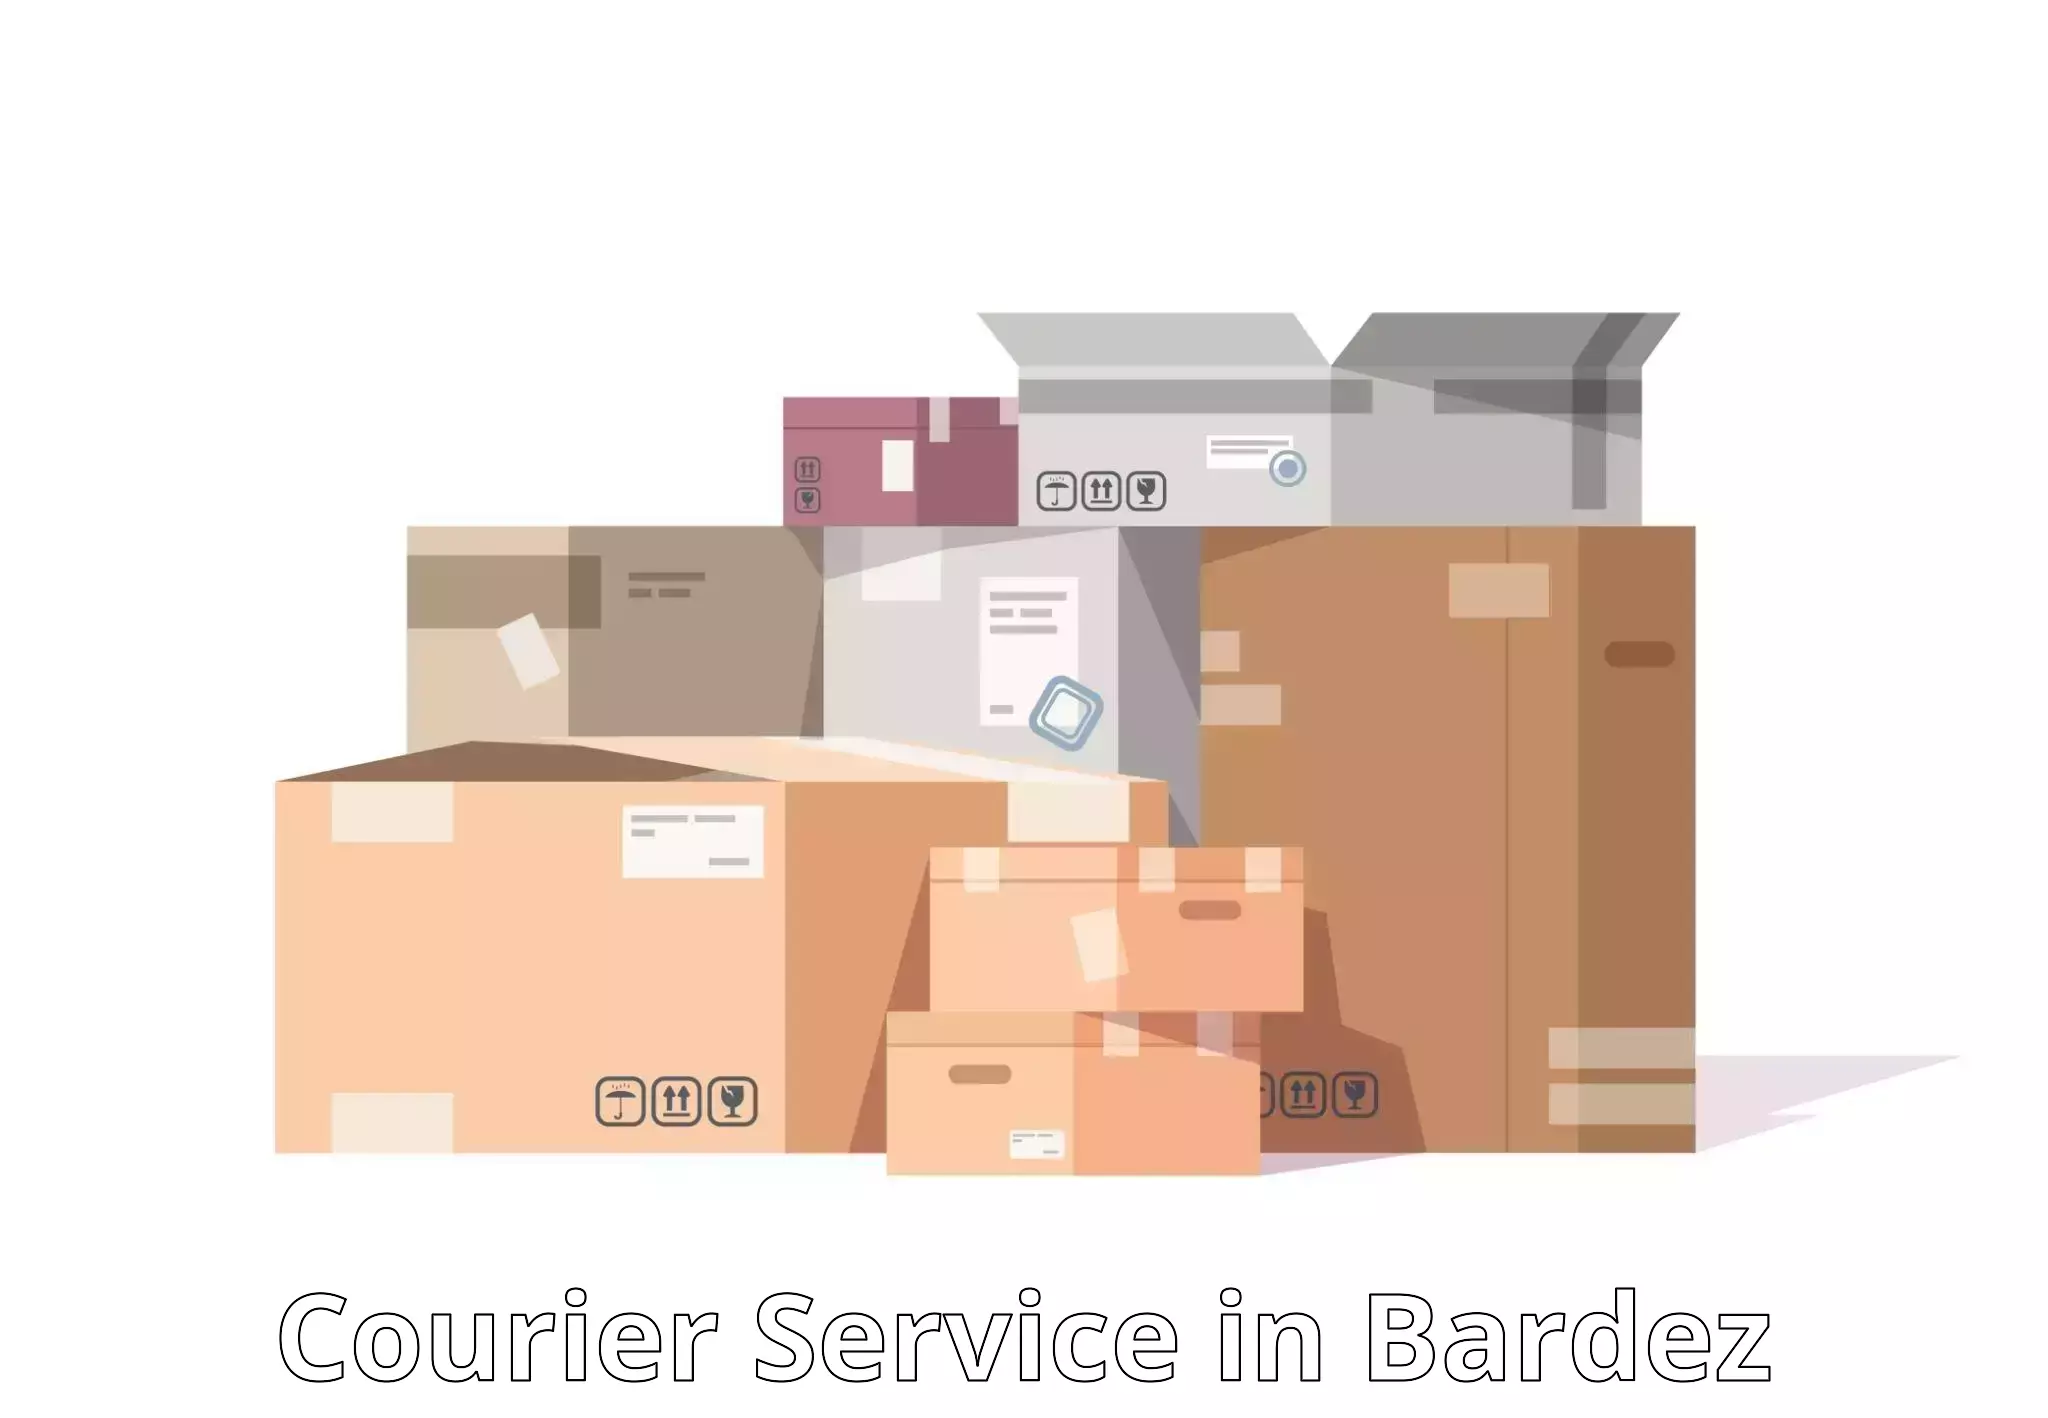 Doorstep parcel pickup in Bardez